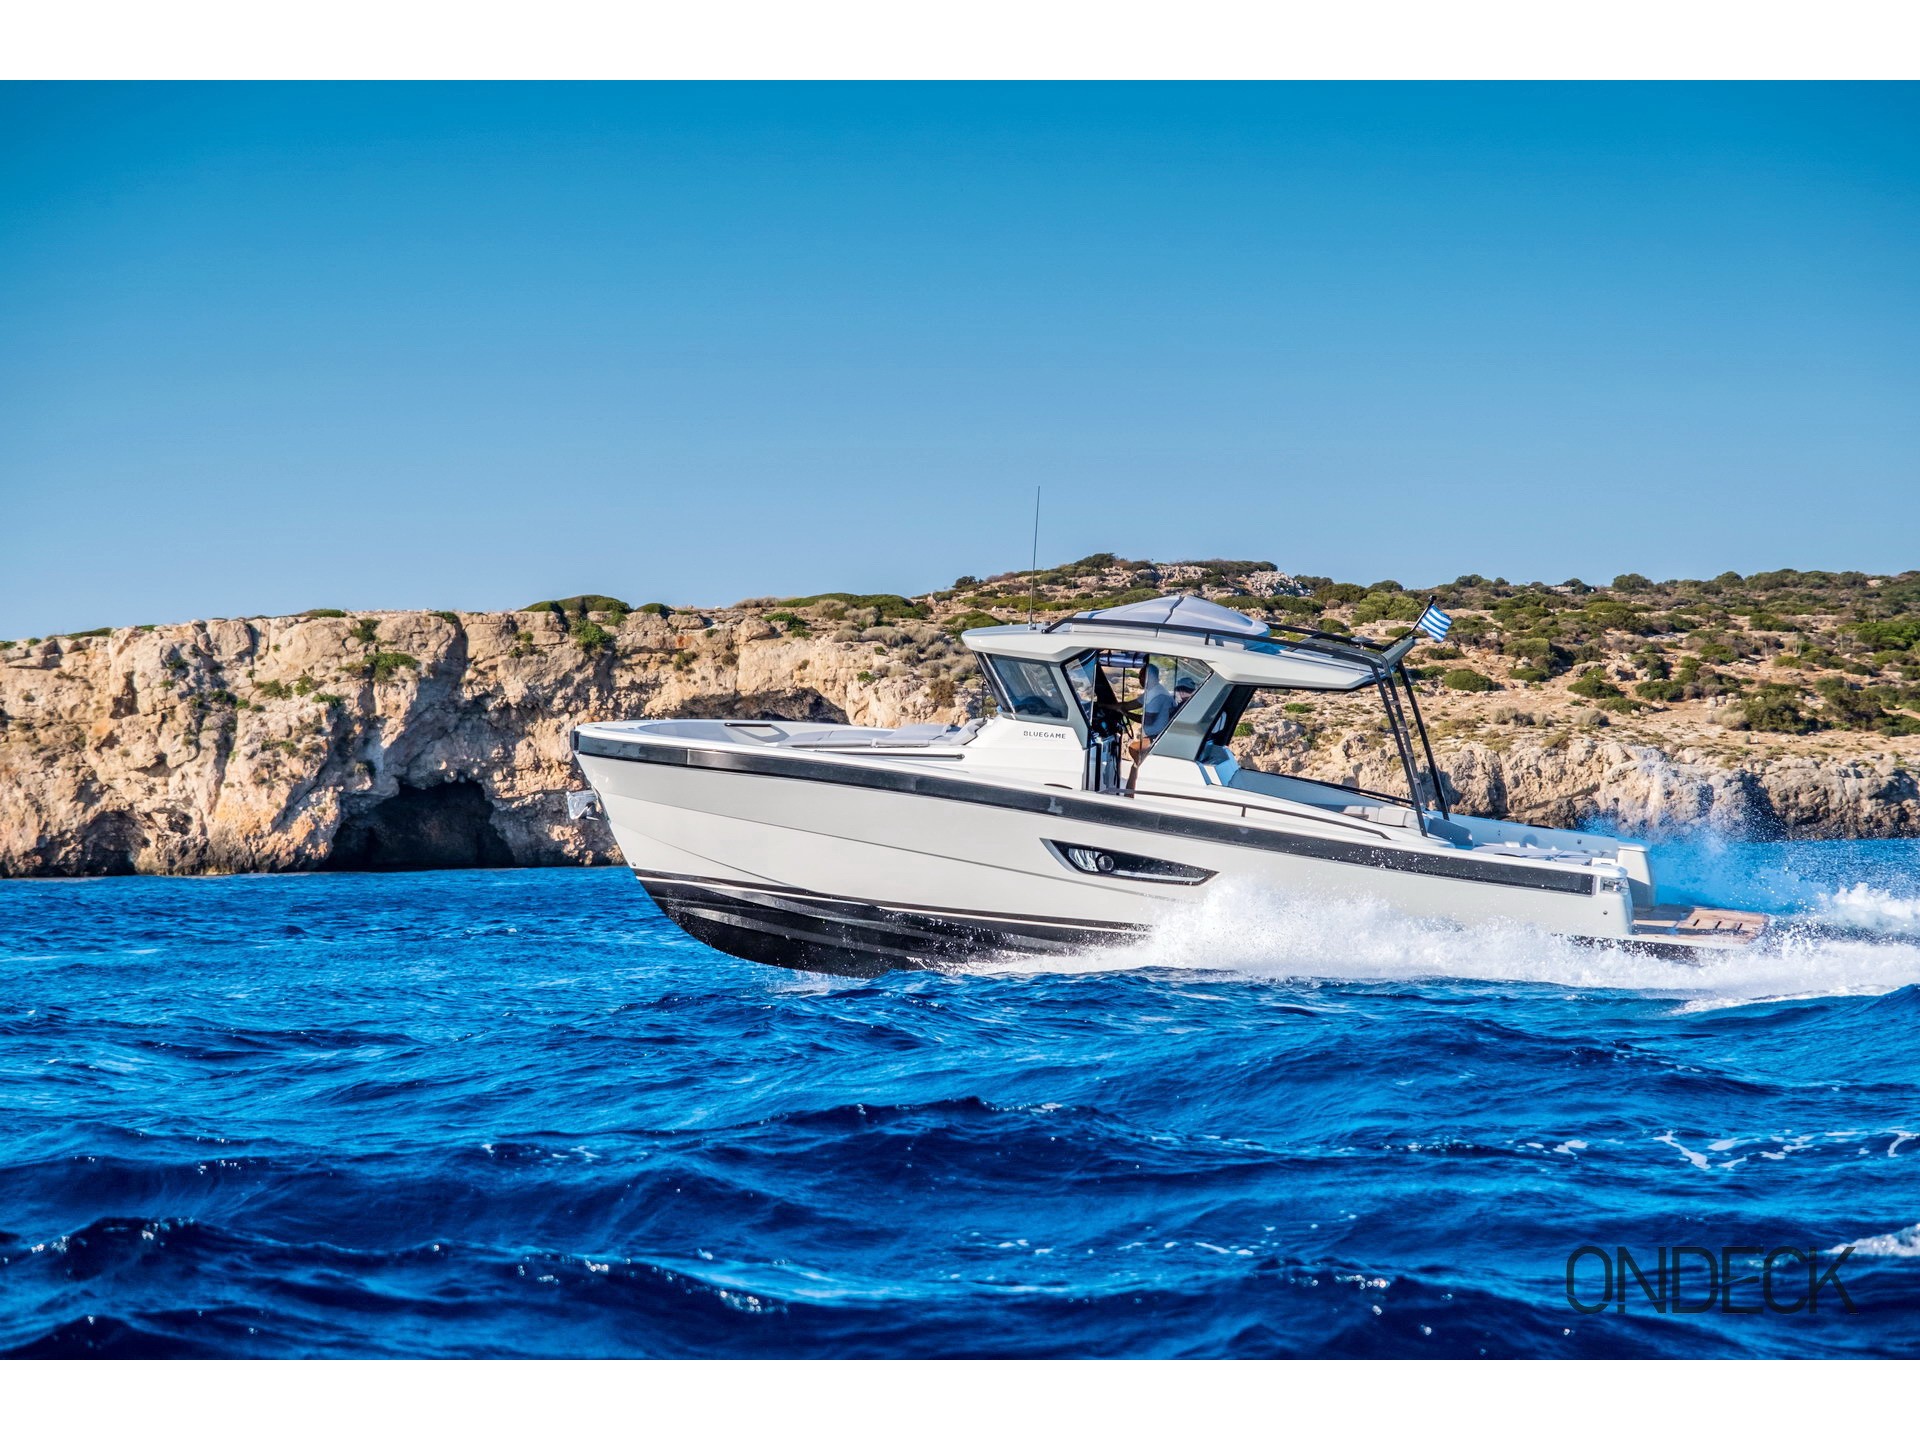 Skipper 30 - Yacht Charter Mykonos & Boat hire in Greece Cyclades Islands Mykonos Mykonos 1